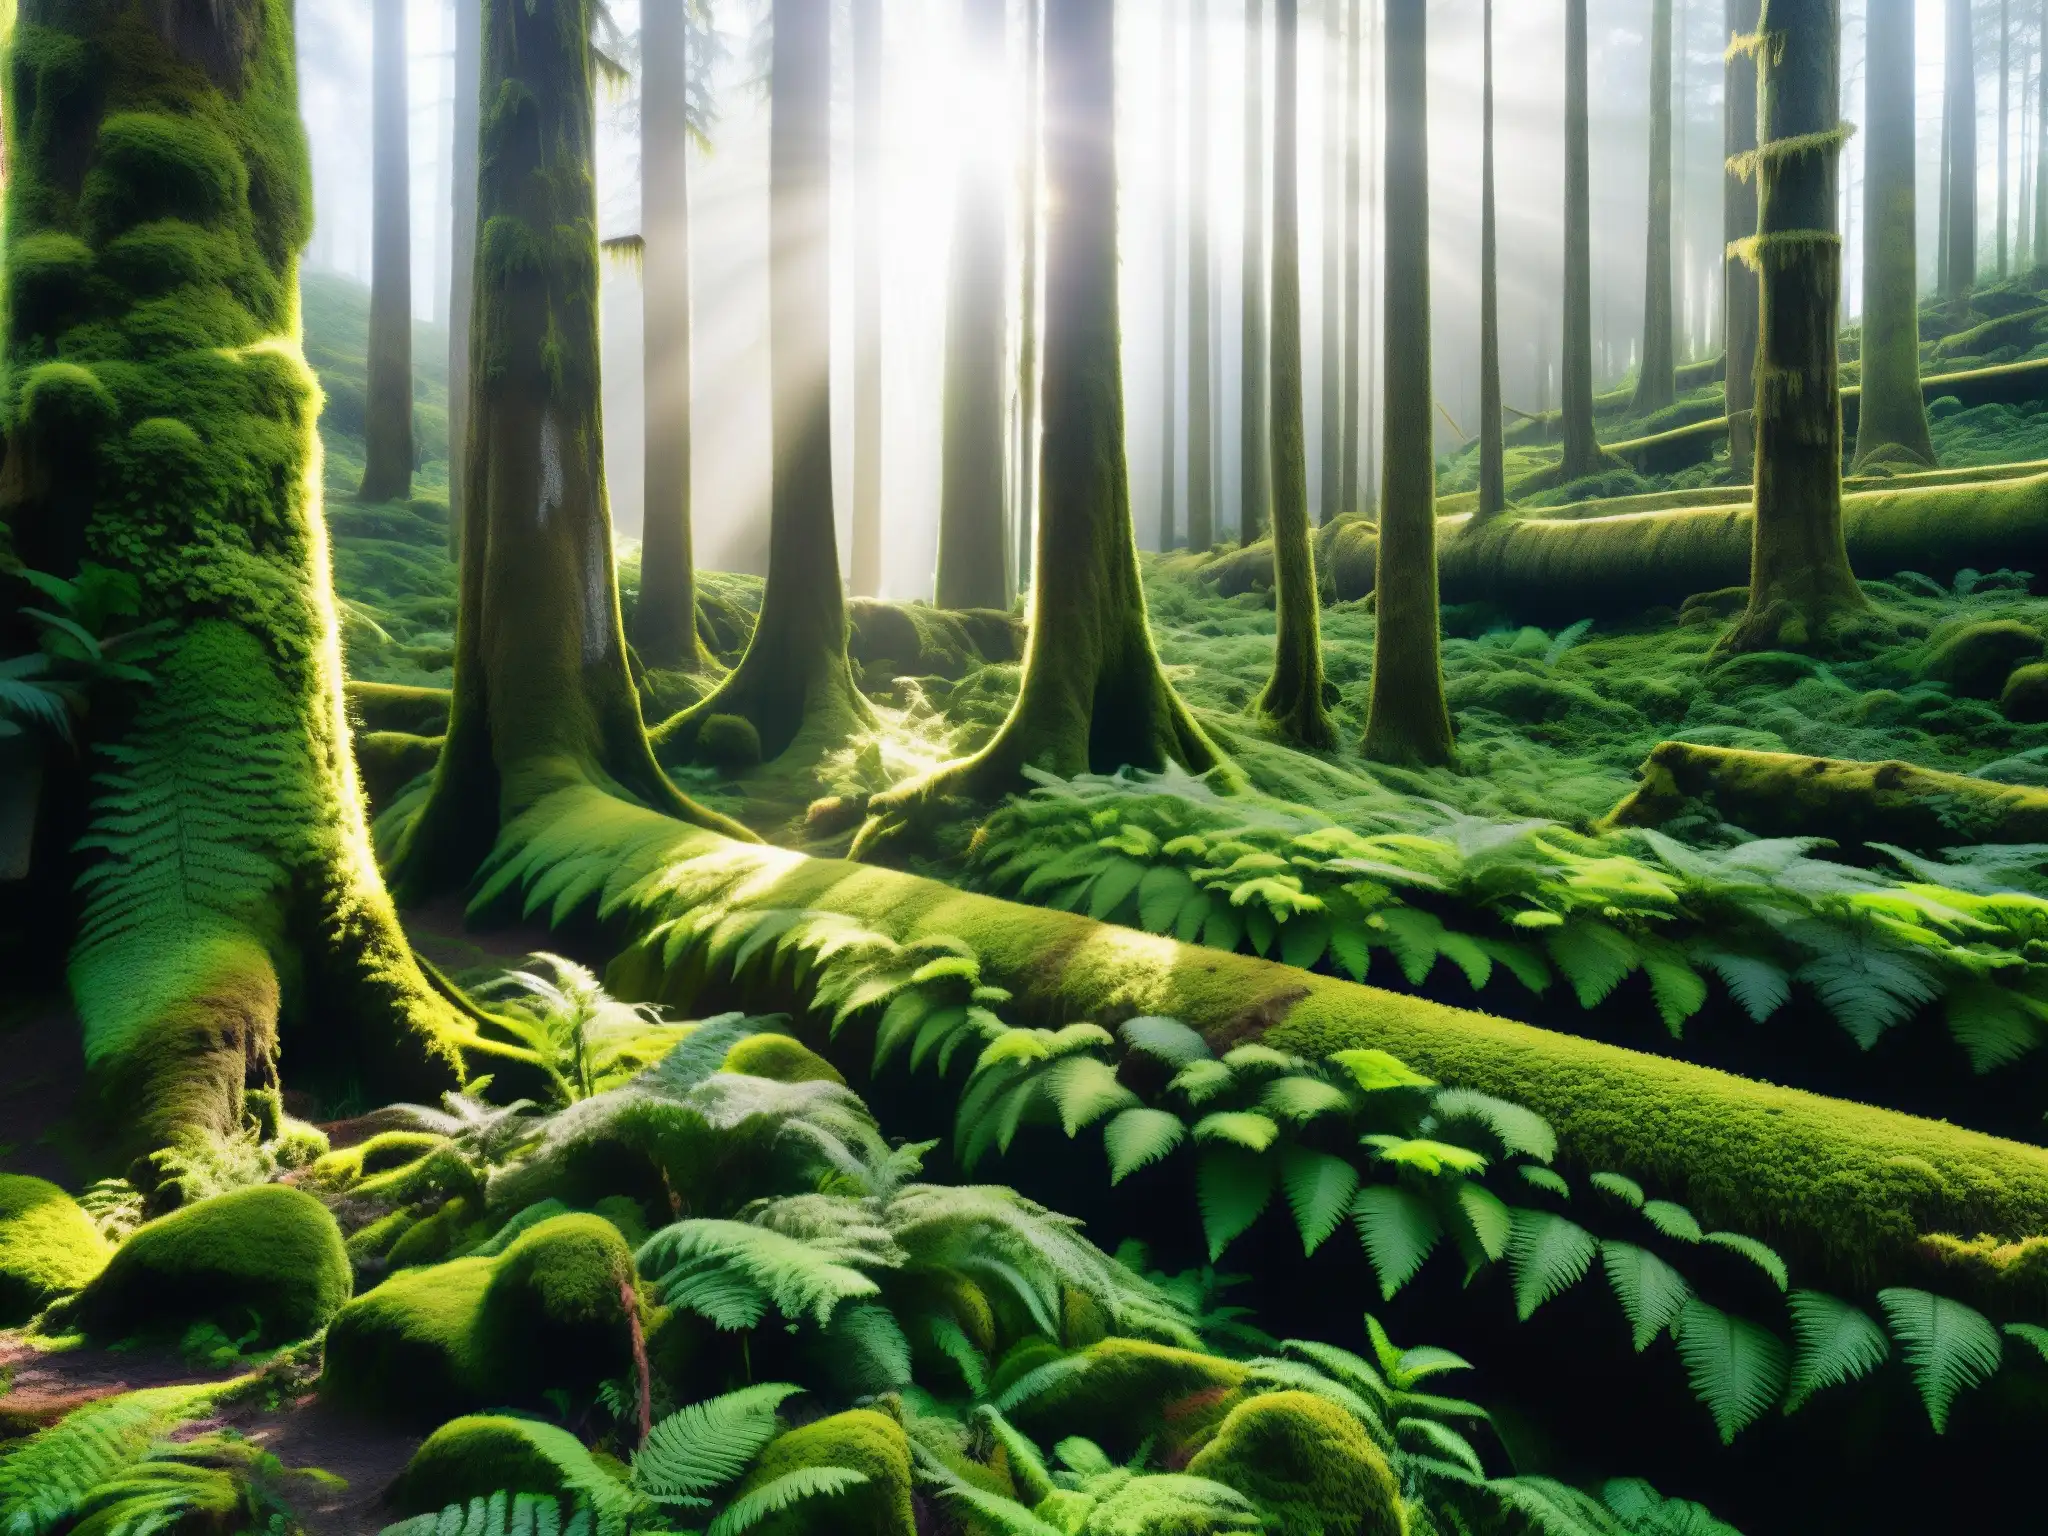 Un bosque exuberante y misterioso en Chiloé, con la luz filtrándose a través del dosel